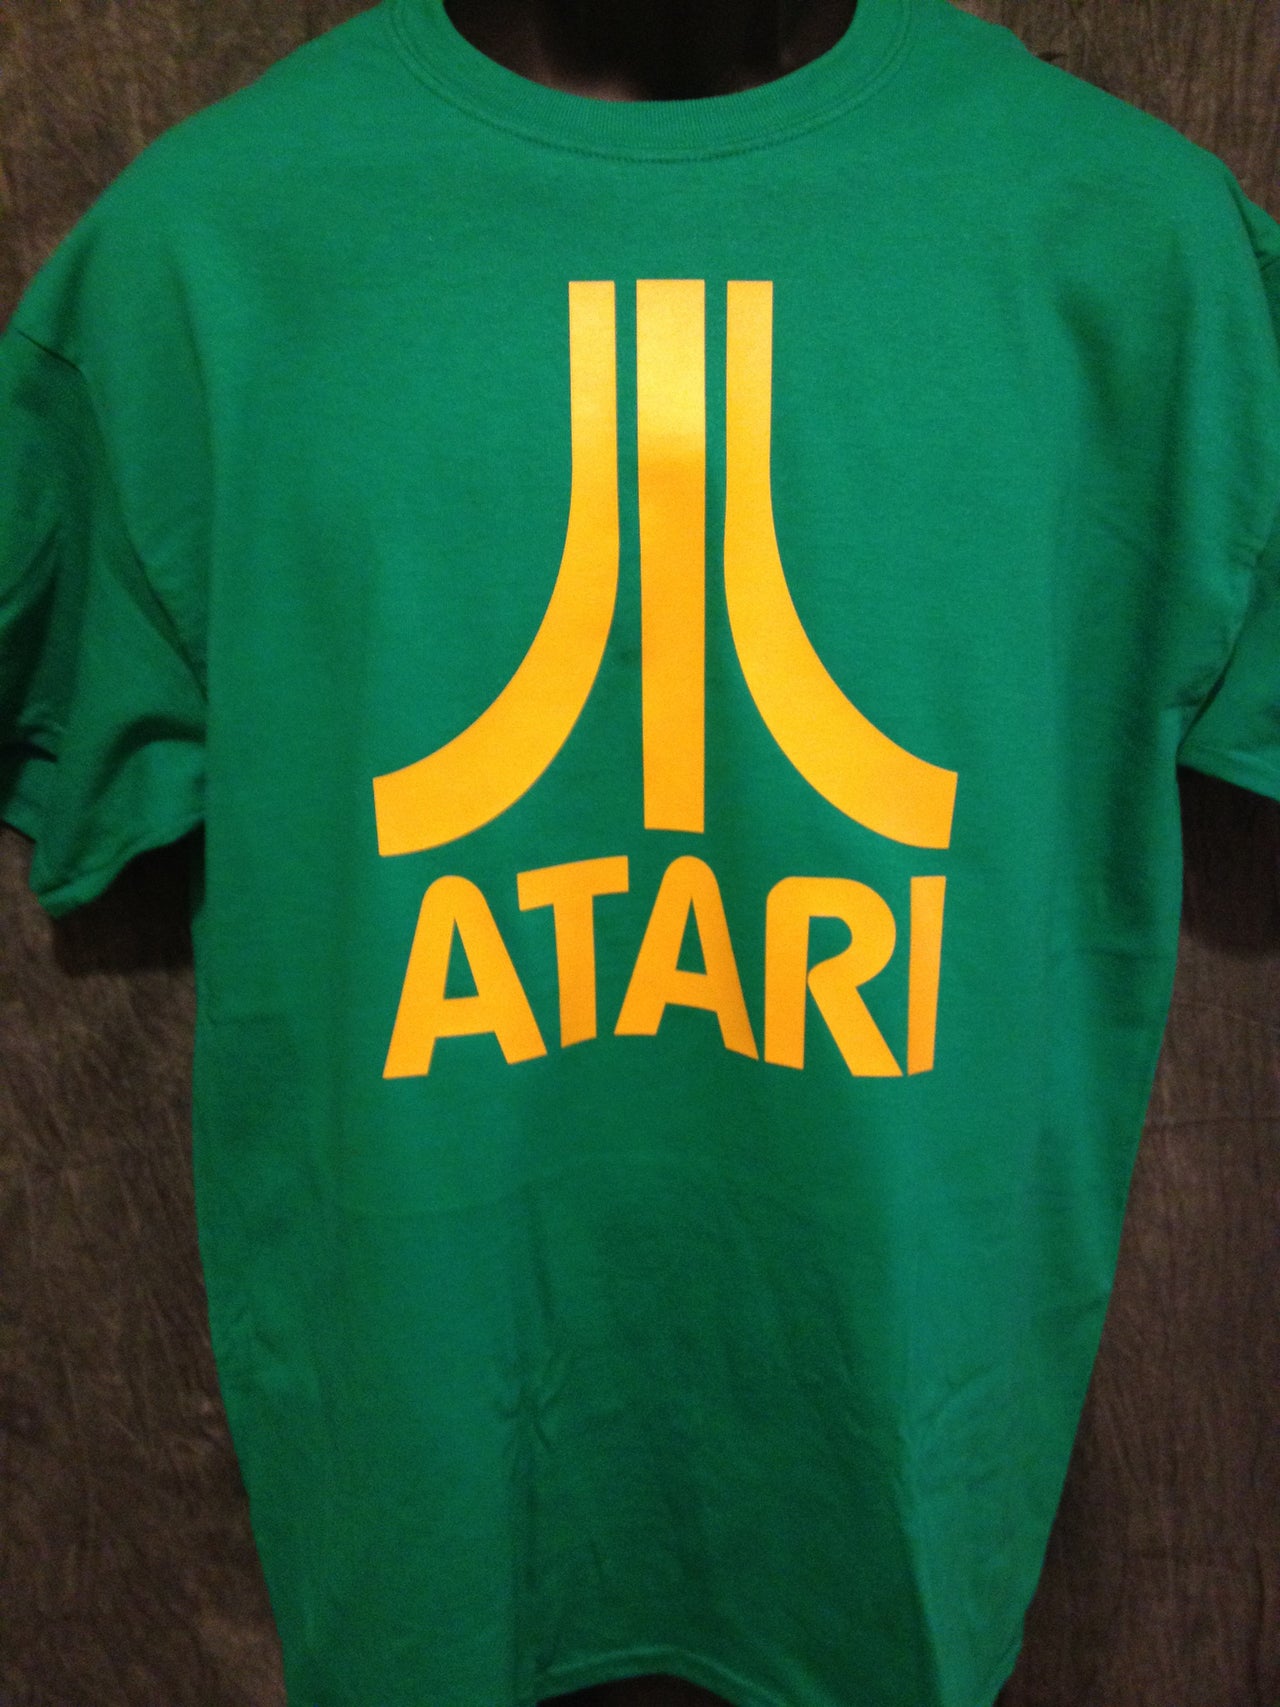 Atari Logo Tshirt: Green With Yellow Print - TshirtNow.net - 1